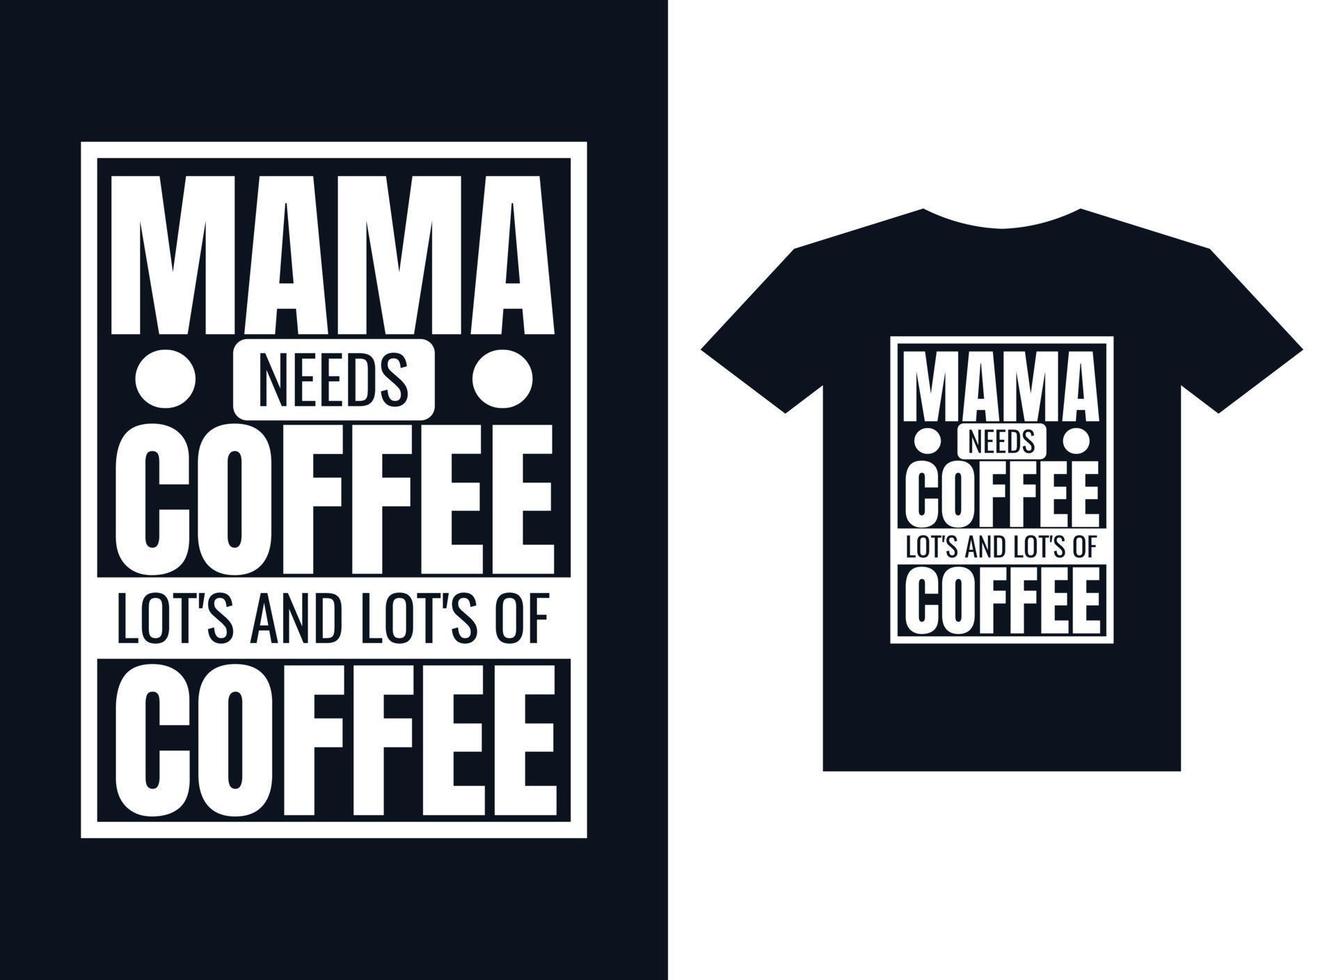 vecteur de conception de t-shirt typographie café